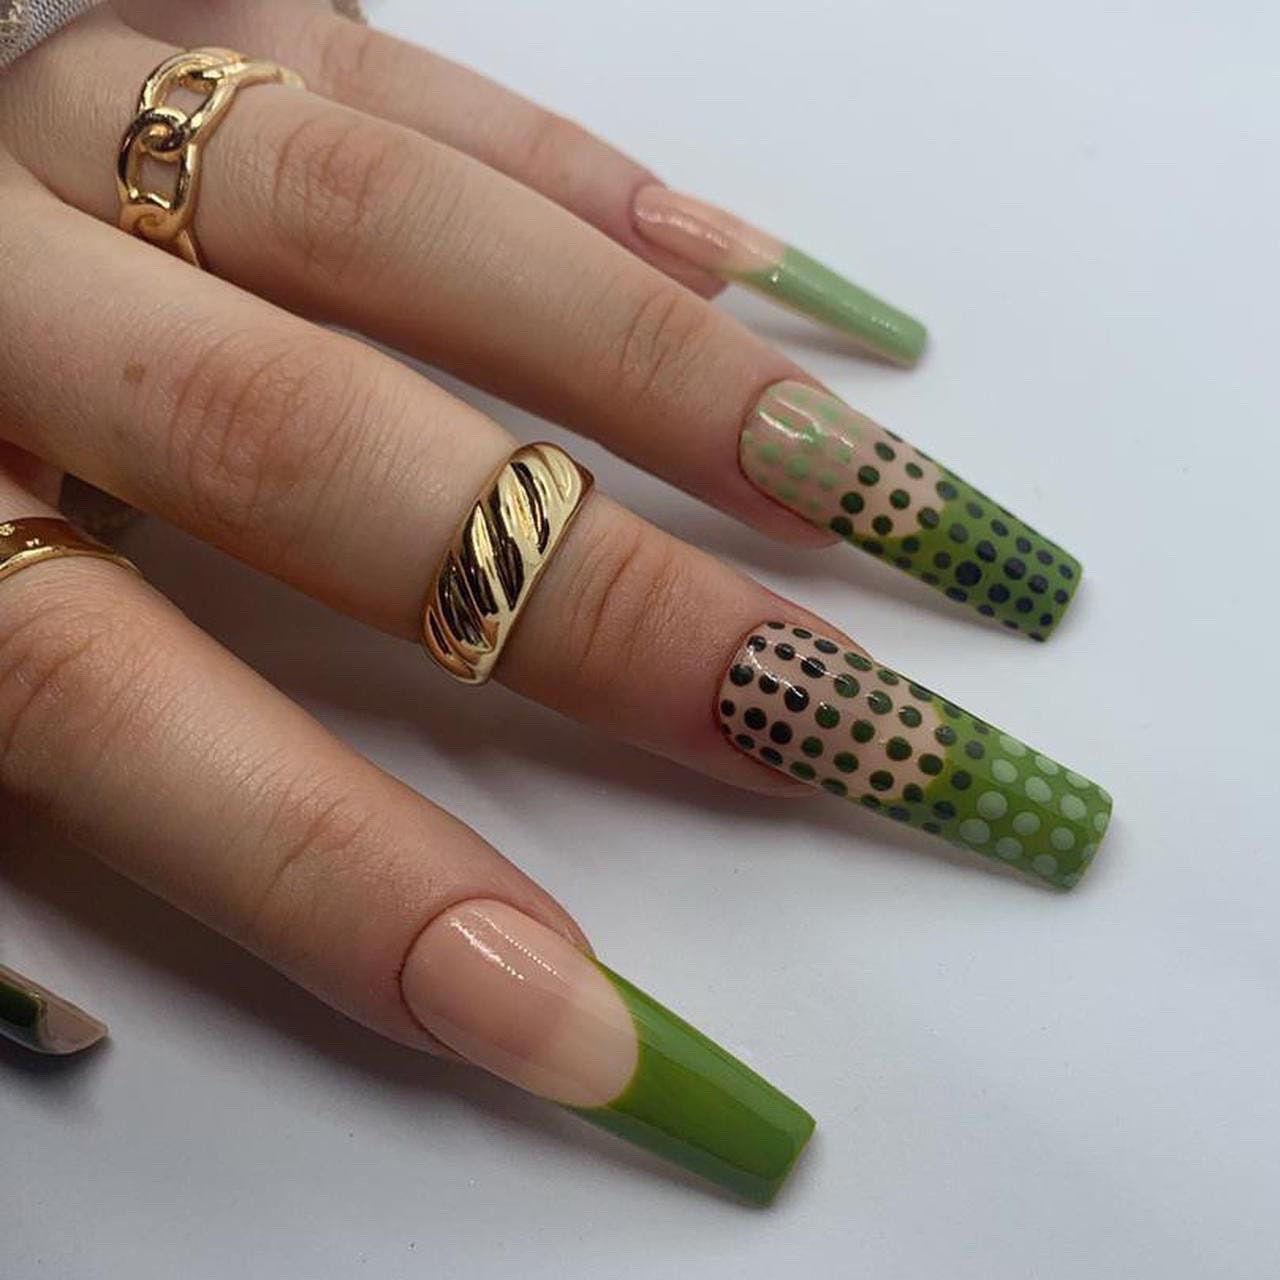 Grünes Polka-Dot French Tip Press On Nails | Handgemalte Wiederverwendbare Gelnägel von nailsbymonicazx